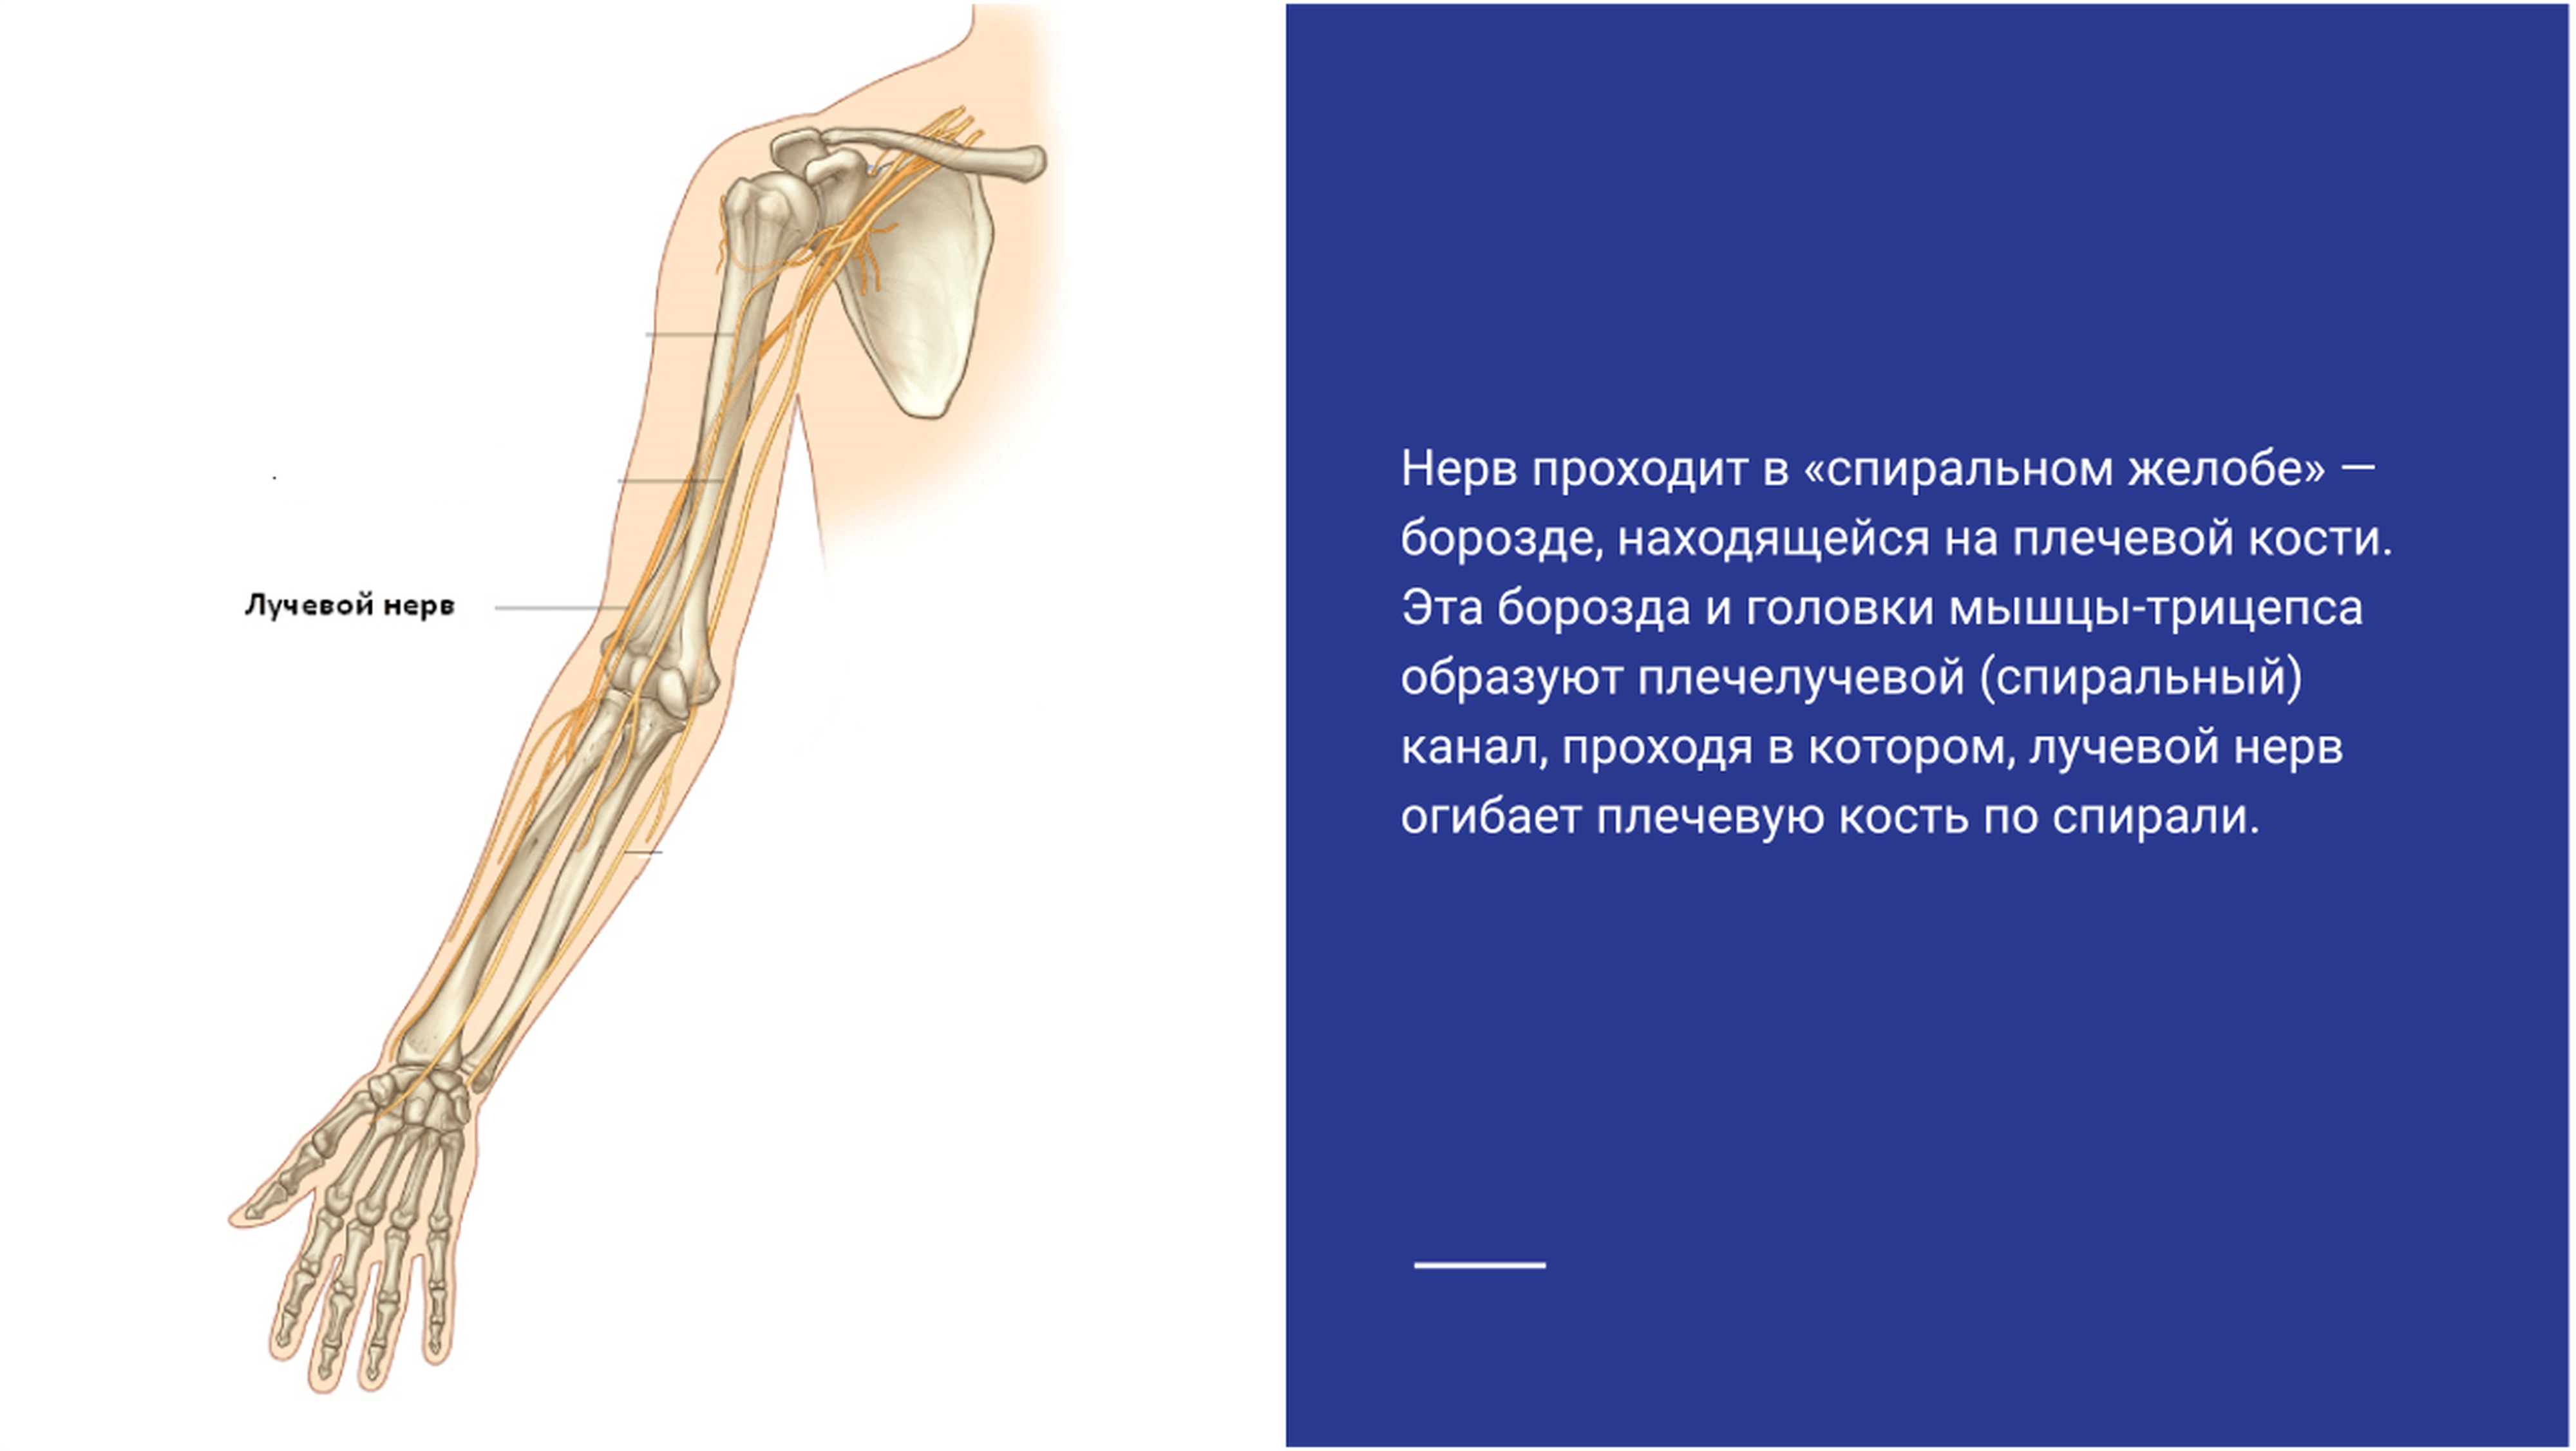 Невропатия лучевого нерва. Плечемышечный канал лучевого нерва. Ход лучевого нерва на предплечье. Туннельный синдром лучевого нерва. Нейропатия локтевого нерва мкб